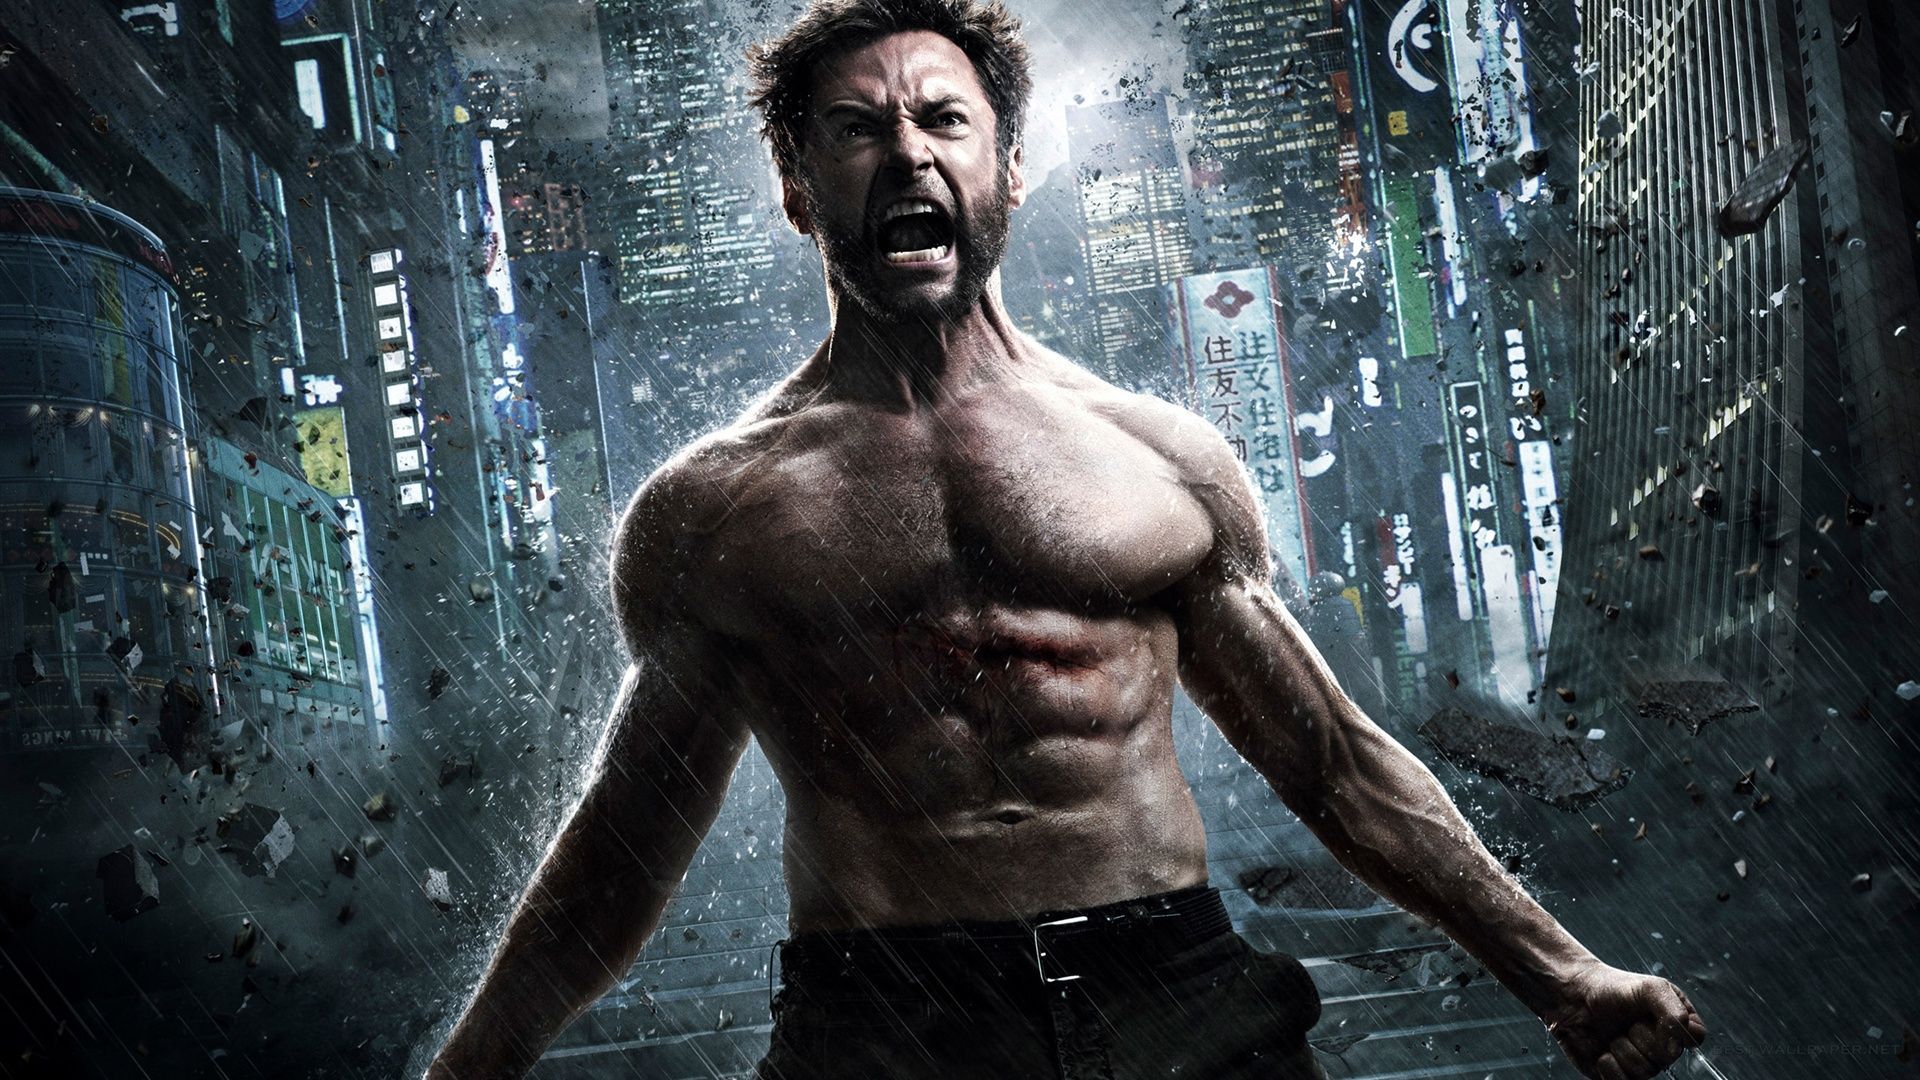 The Wolverine 2, movie 2013 Wallpaper | 1920x1080 resolution ...